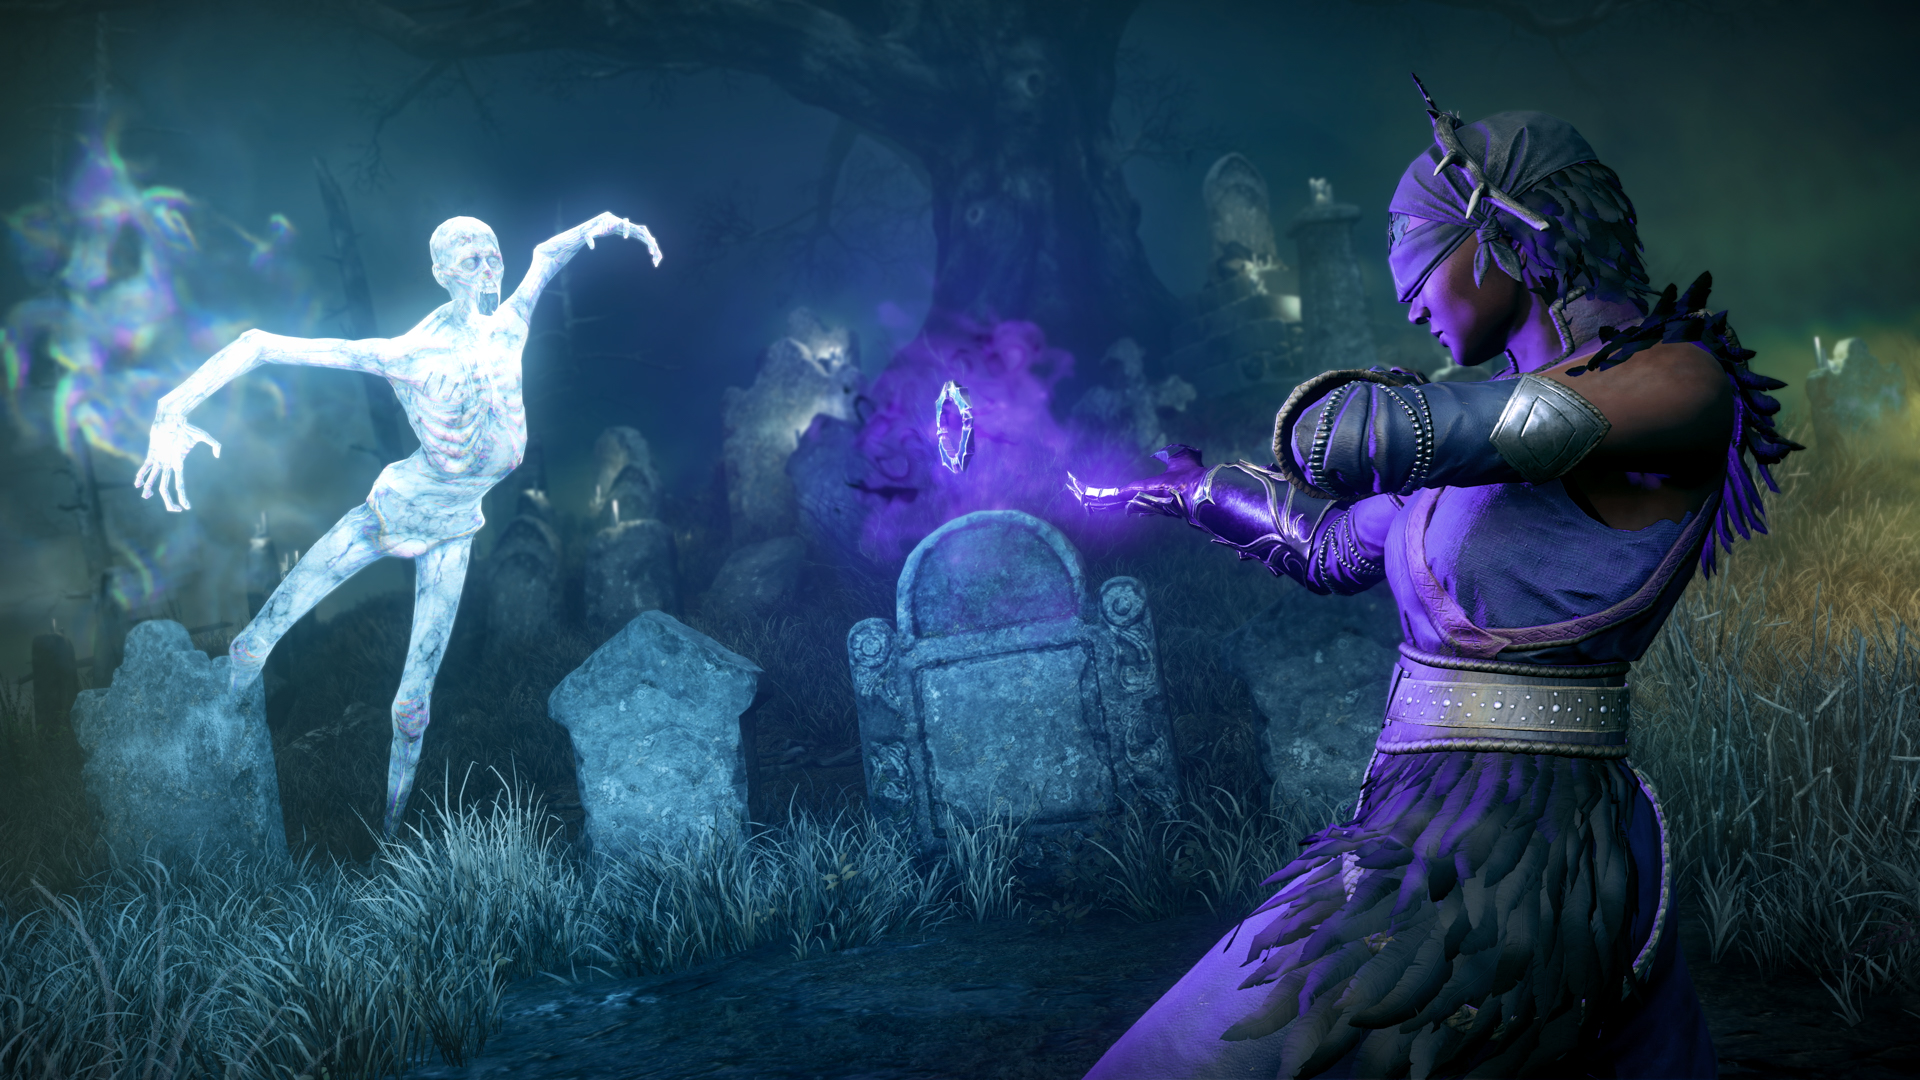 New World Aeternum, orta düzey bir MMO'yu harika bir RPG'ye dönüştürüyor: Gözleri bağlı bir cadı, bir ruh ona doğru uçarken mezarlık alanında ellerine mor enerji yayıyor 